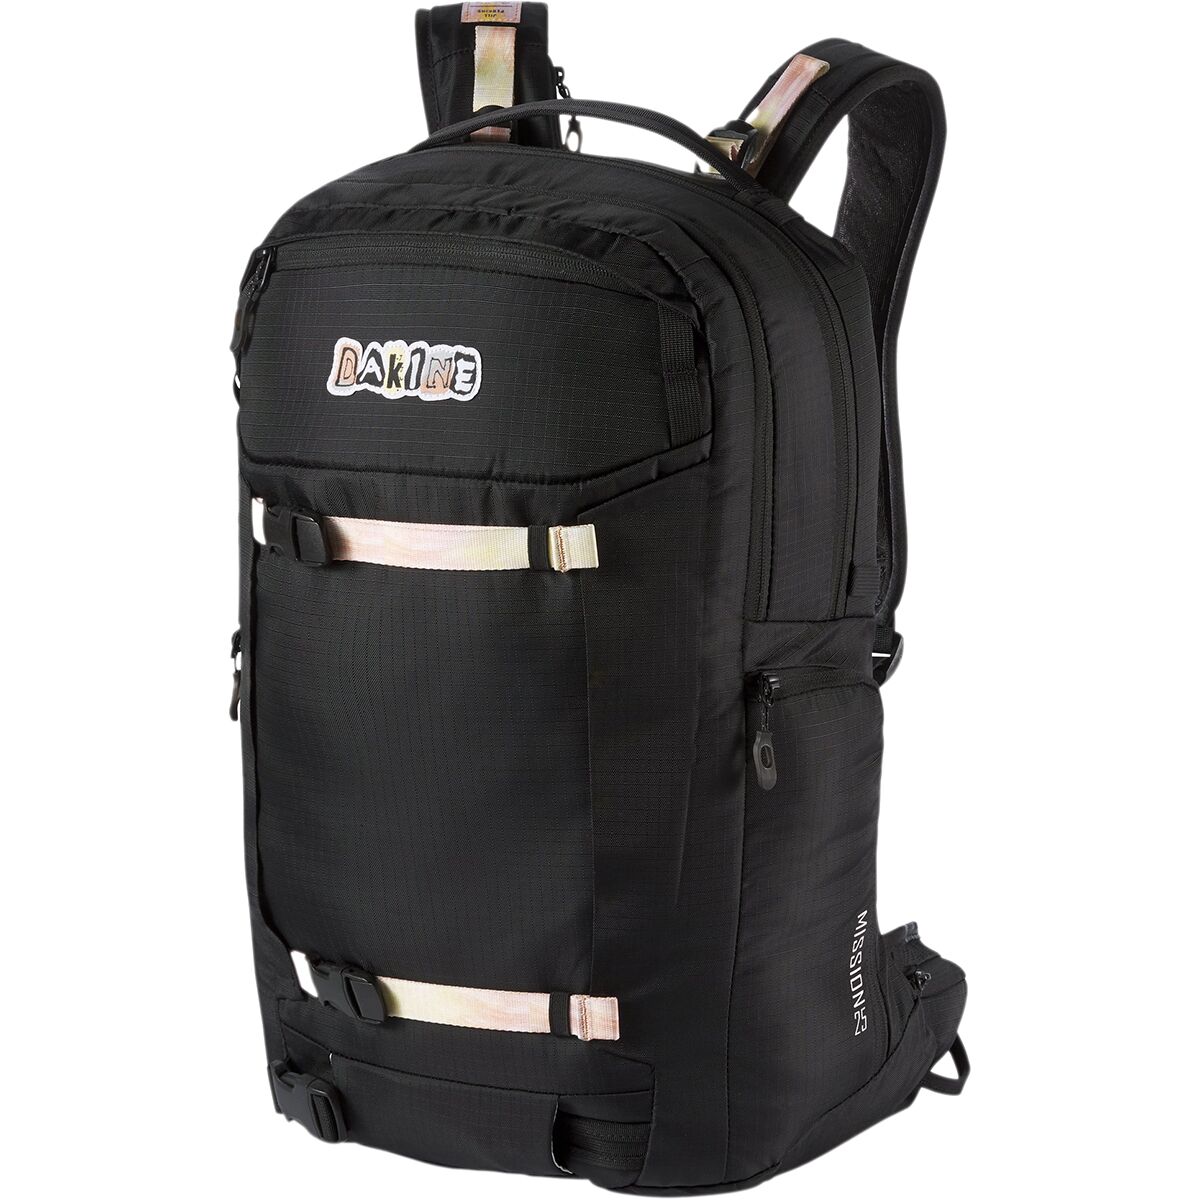 DAKINE Team Mission Pro 25L Backpack - Jill Perkins - Women's